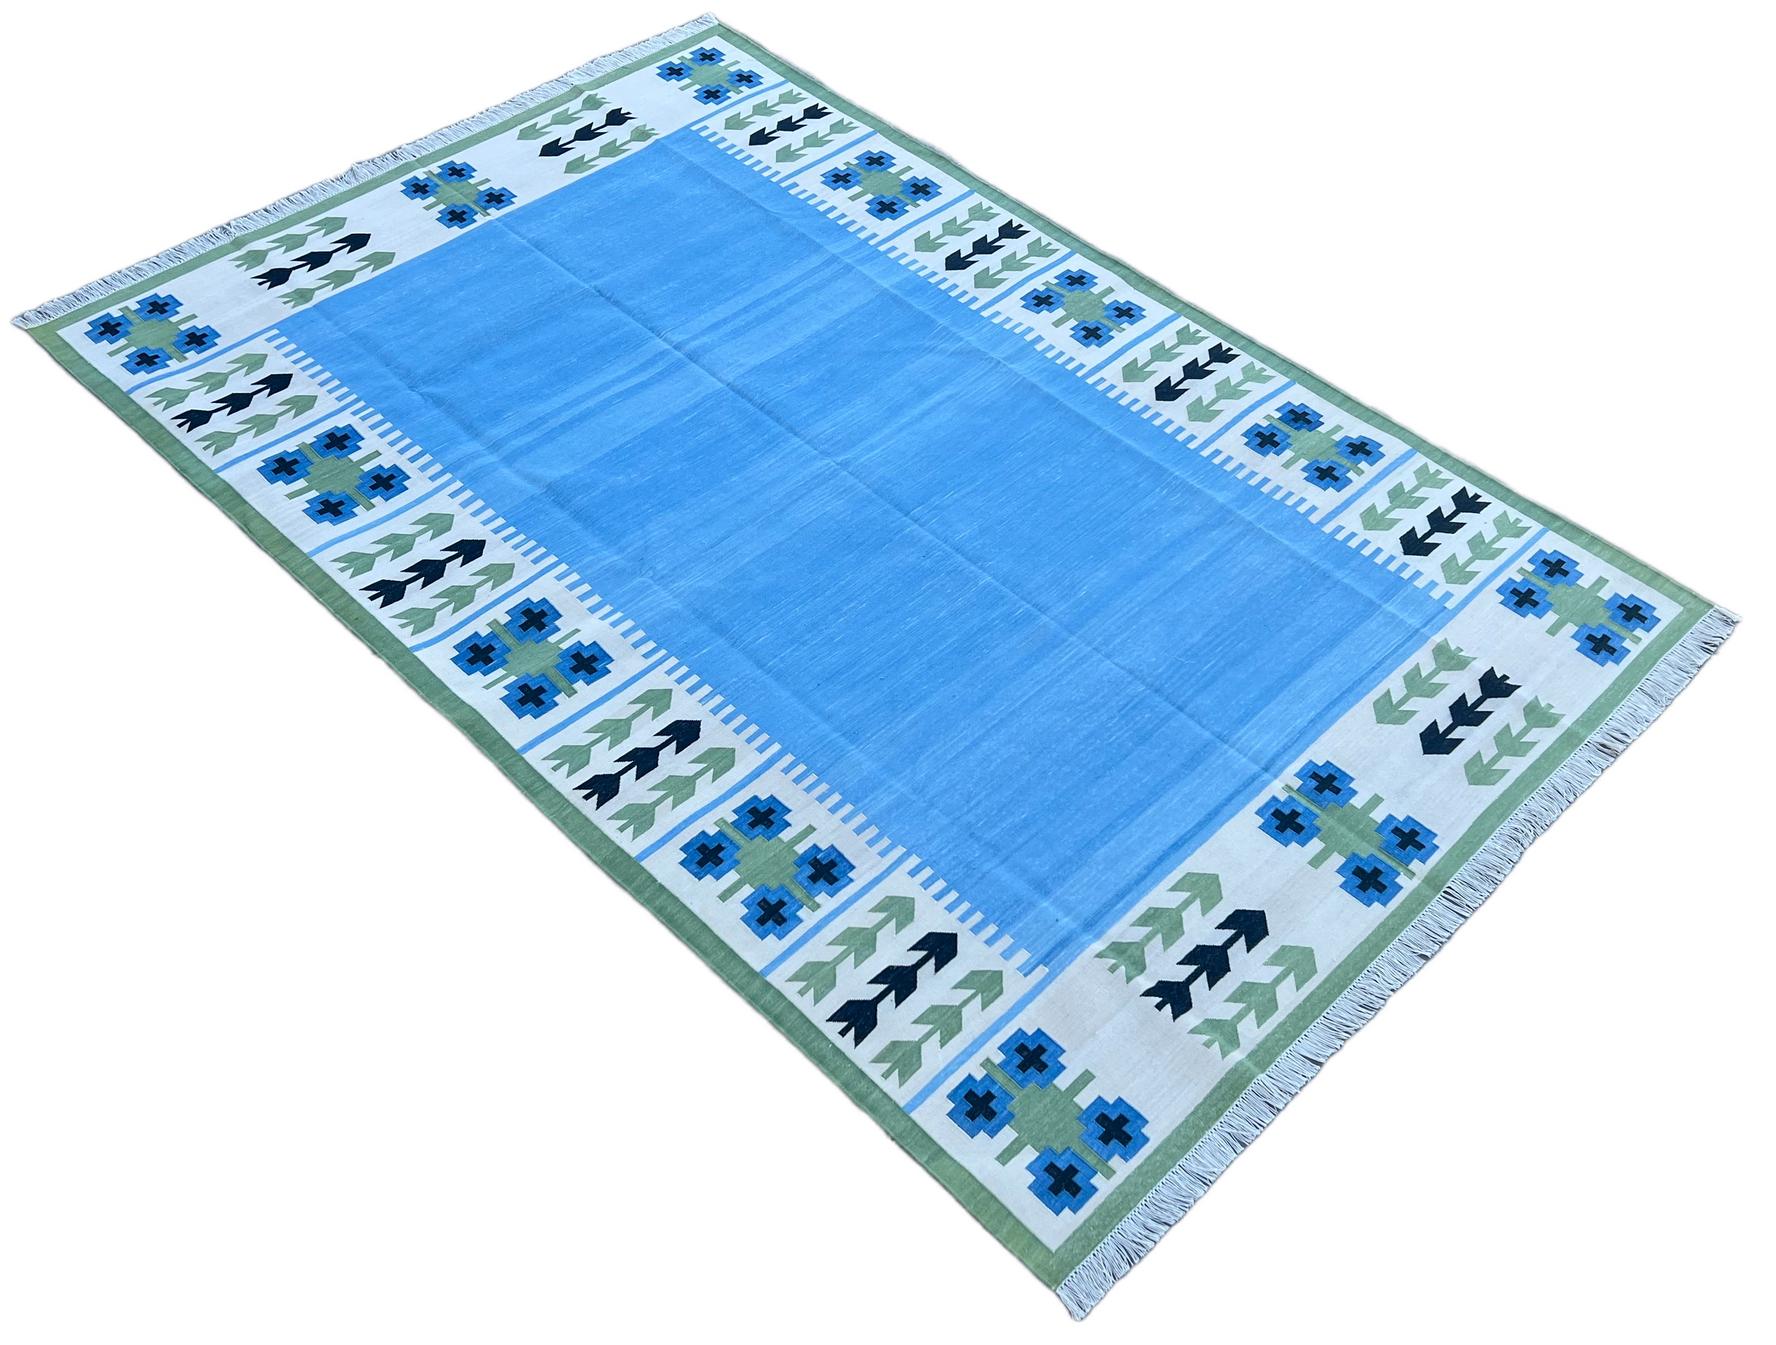 Baumwolle natürlich pflanzlich gefärbt blau und grün Blatt gemustert indischen Teppich-6'x9'
Diese speziellen flachgewebten Dhurries werden aus 15-fachem Garn aus 100% Baumwolle handgewebt. Aufgrund der speziellen Fertigungstechniken, die zur